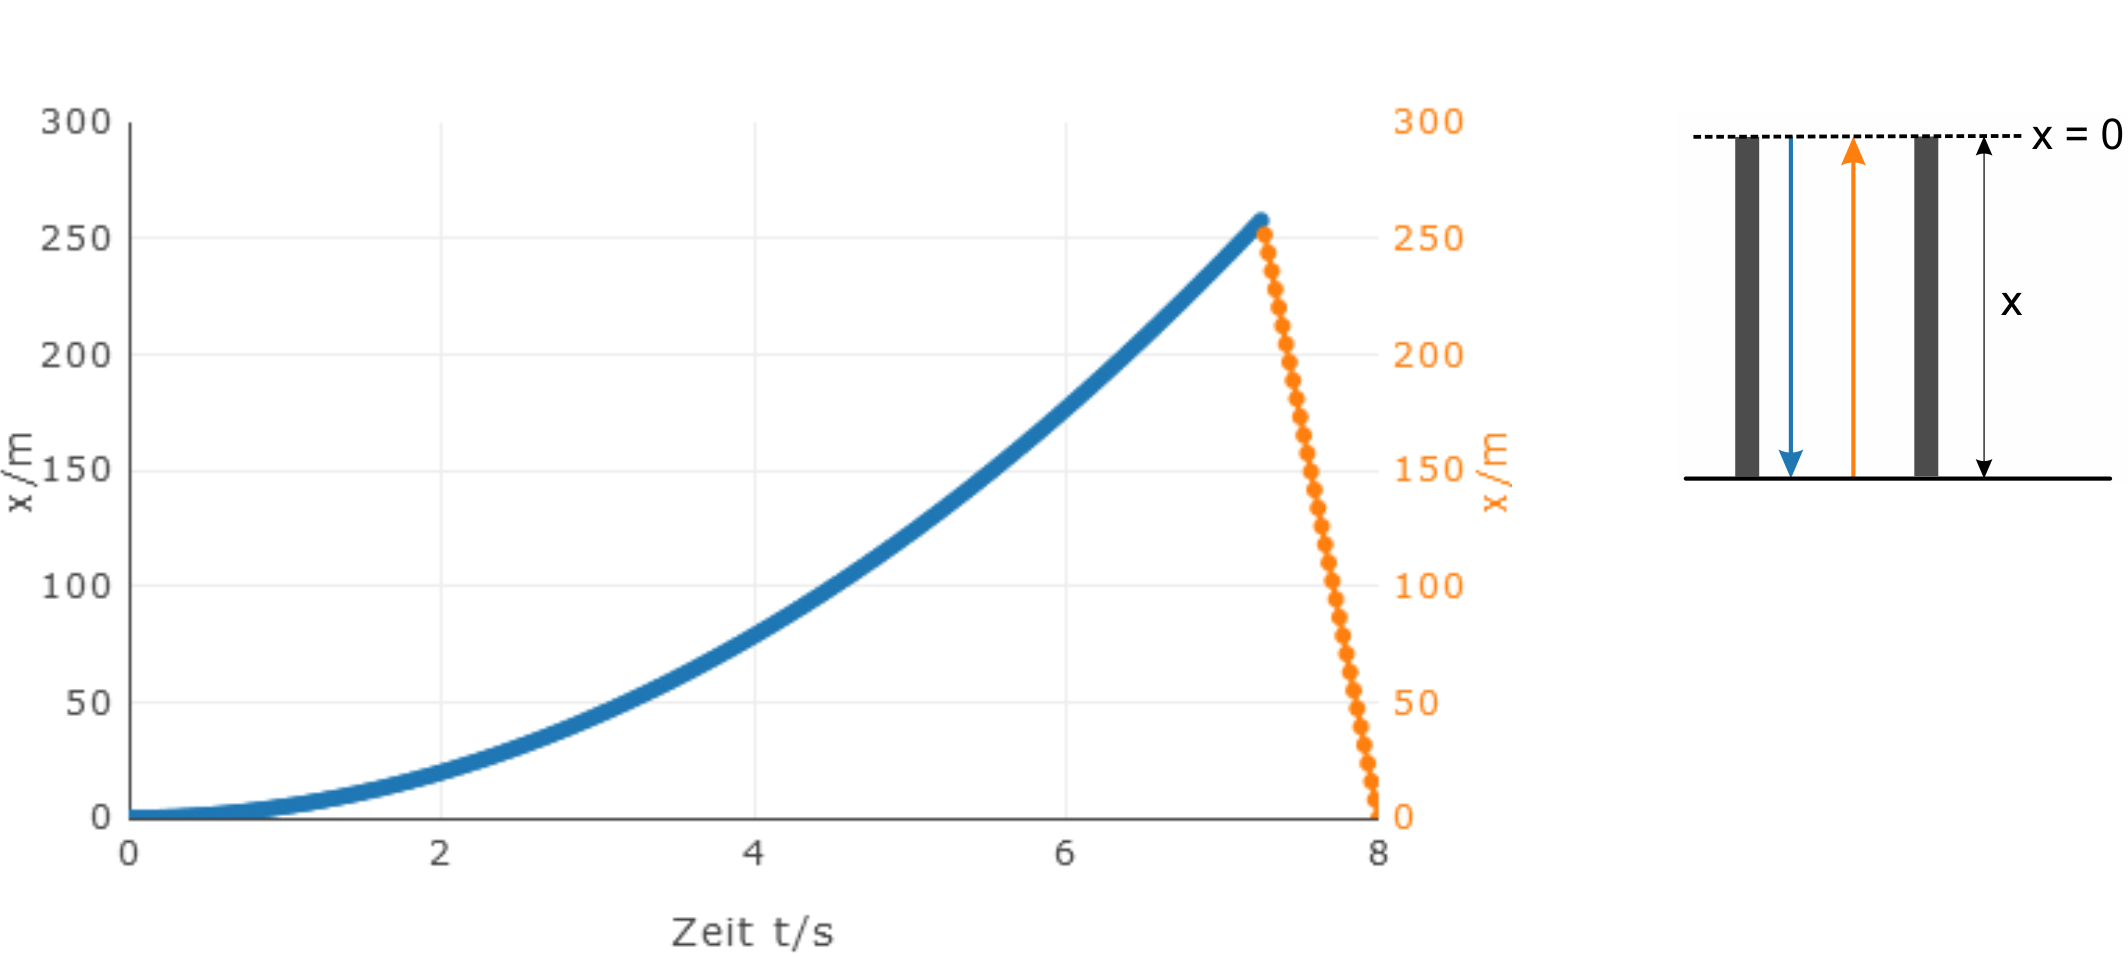 Weg-Zeit-Diagramm freier Fall mit Schallausbreitung: die Kurve steigt quadratisch, während ein Körper nach unten fällt, und nach dem Aufprall sinkt die Kurve linear, während sich der Schall ausbreitet.